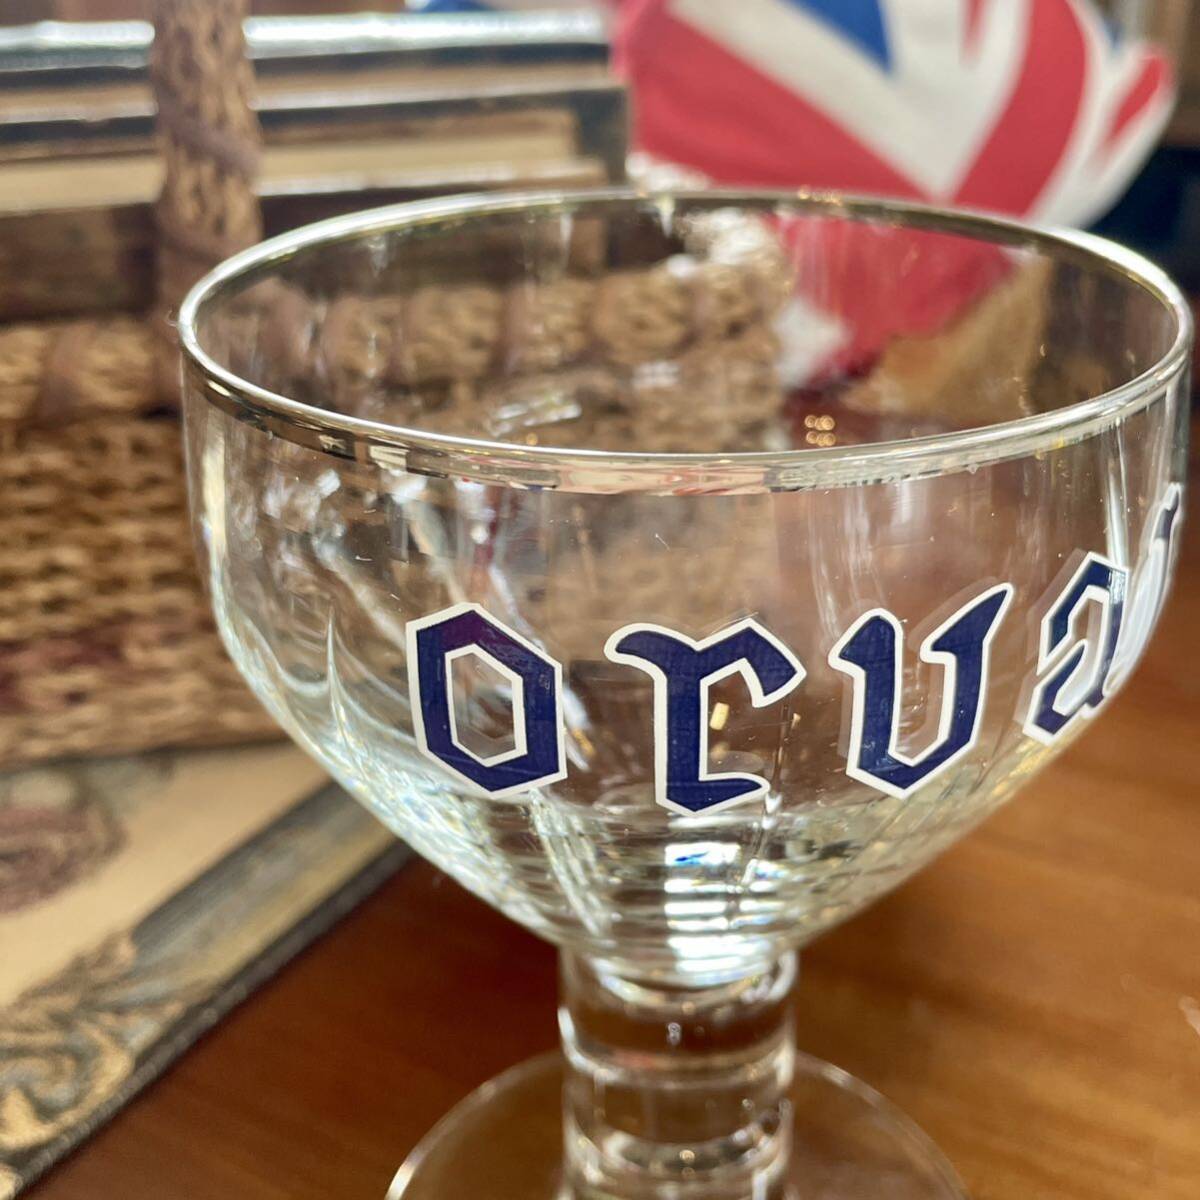 r197 ベルギー オルヴァル グラス 聖杯型 ゴブレットグラス 3点 カッコイイヴィンテージグラス コレクション ビールグラス の画像6